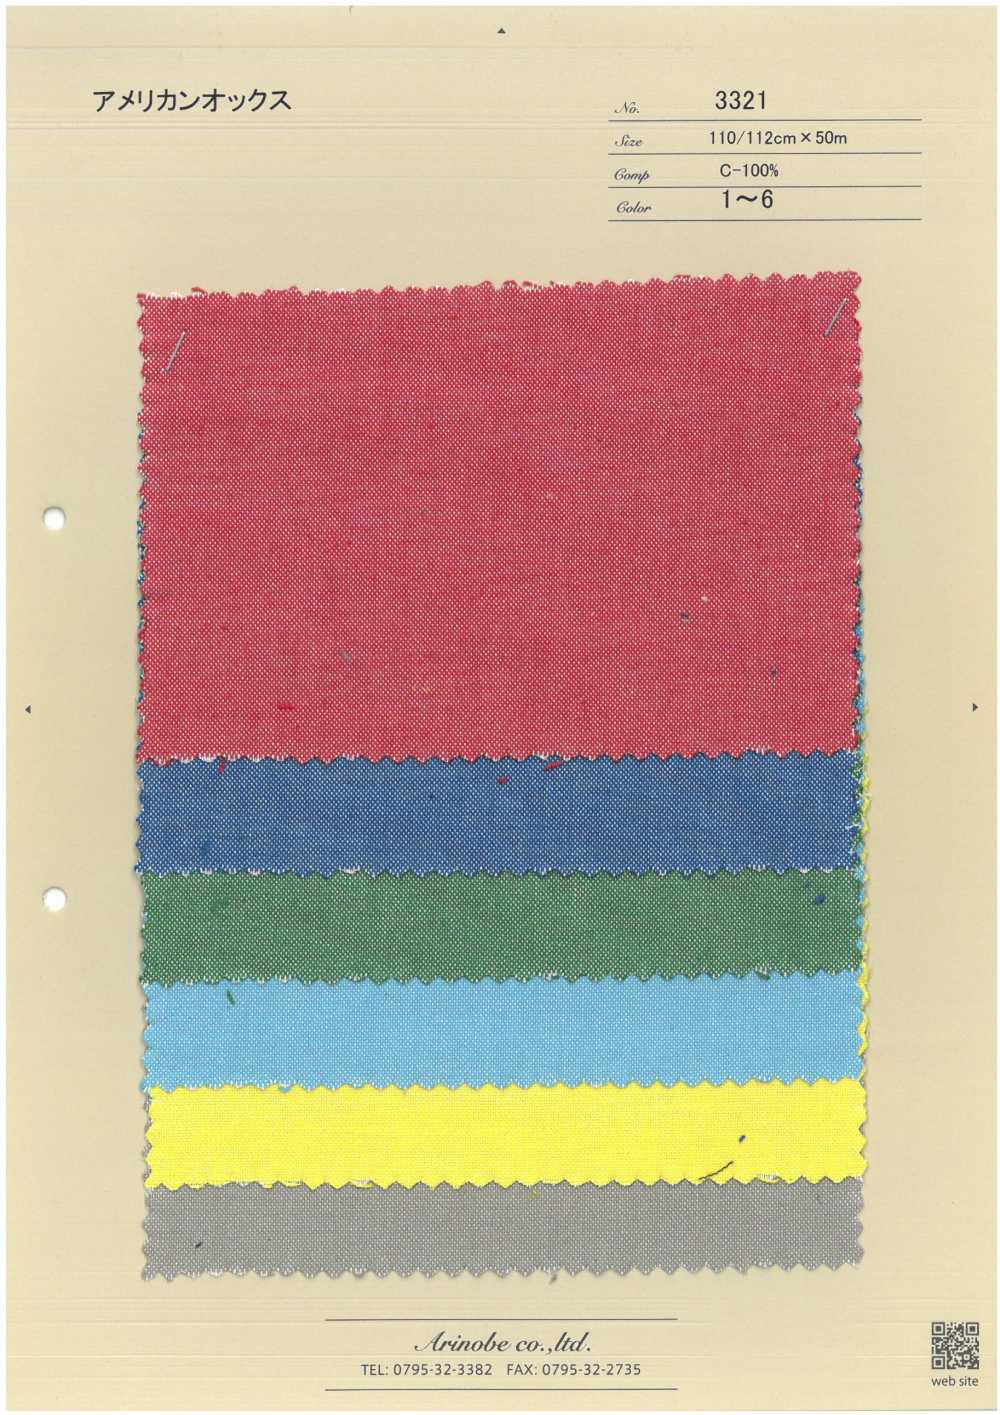 3321 Oxford Americano[Fabrica Textil] ARINOBE CO., LTD.